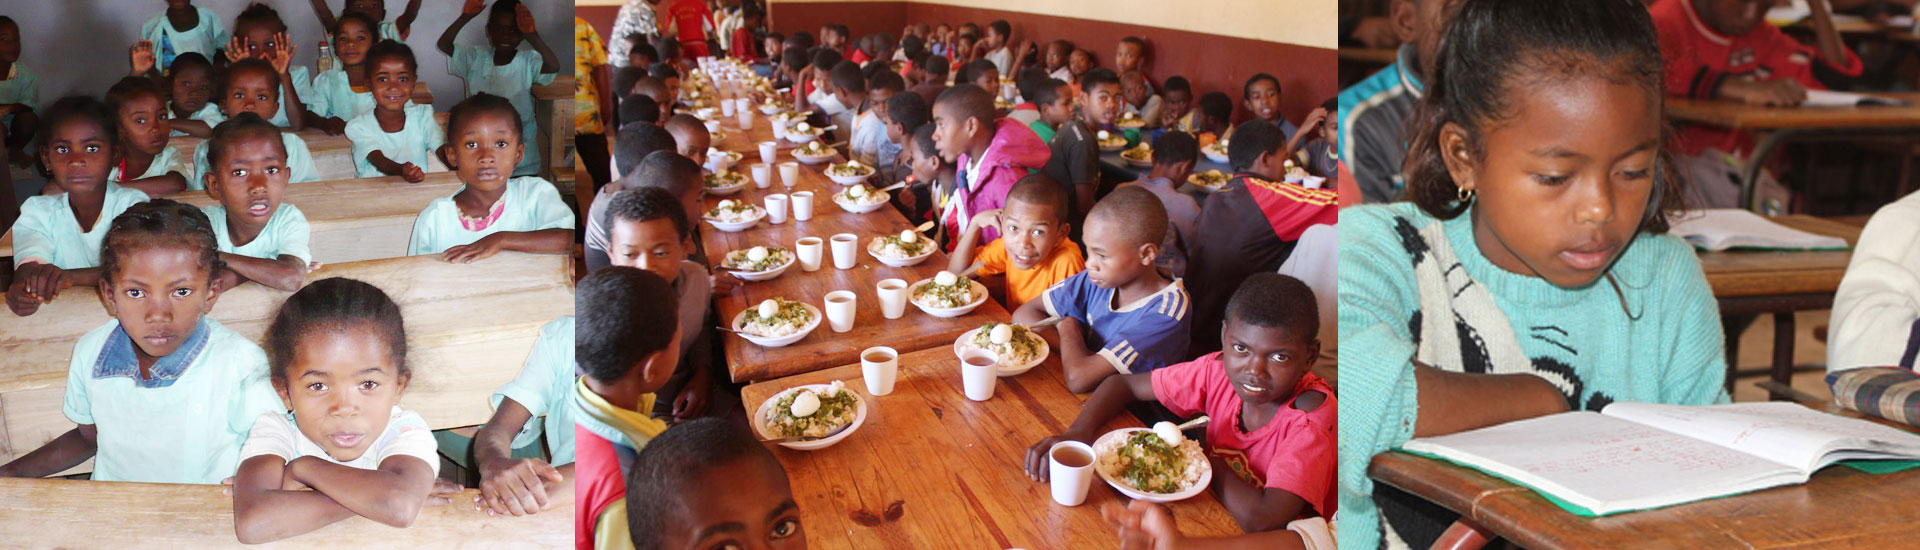 Alimentación y educación en Madagascar